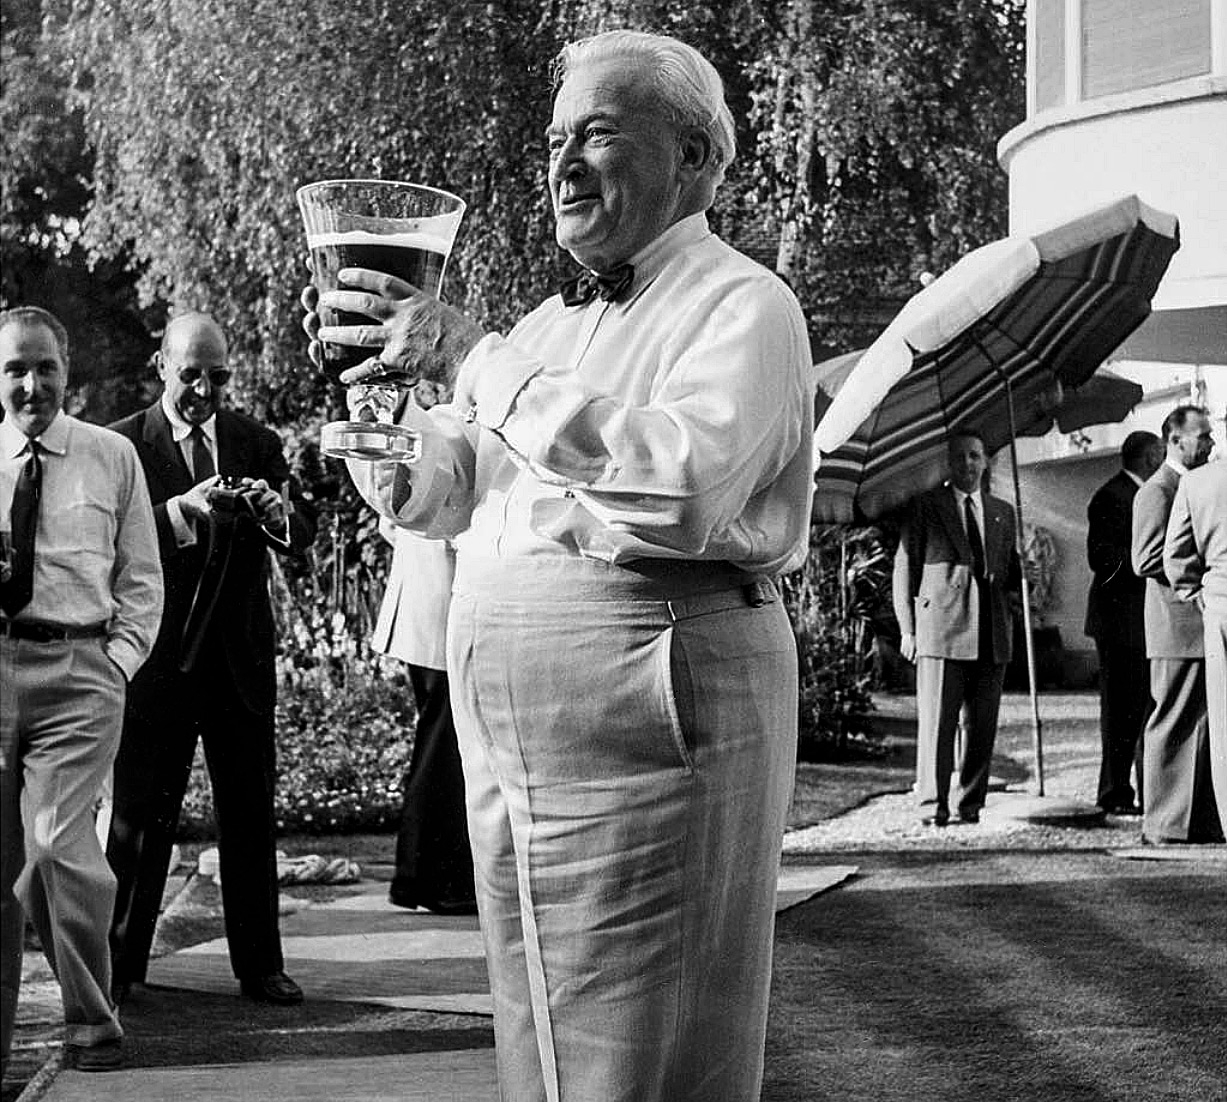 Снимок предположительно сделан в 1956 году на праздновании 75-летия Ганса Вильсдорфа